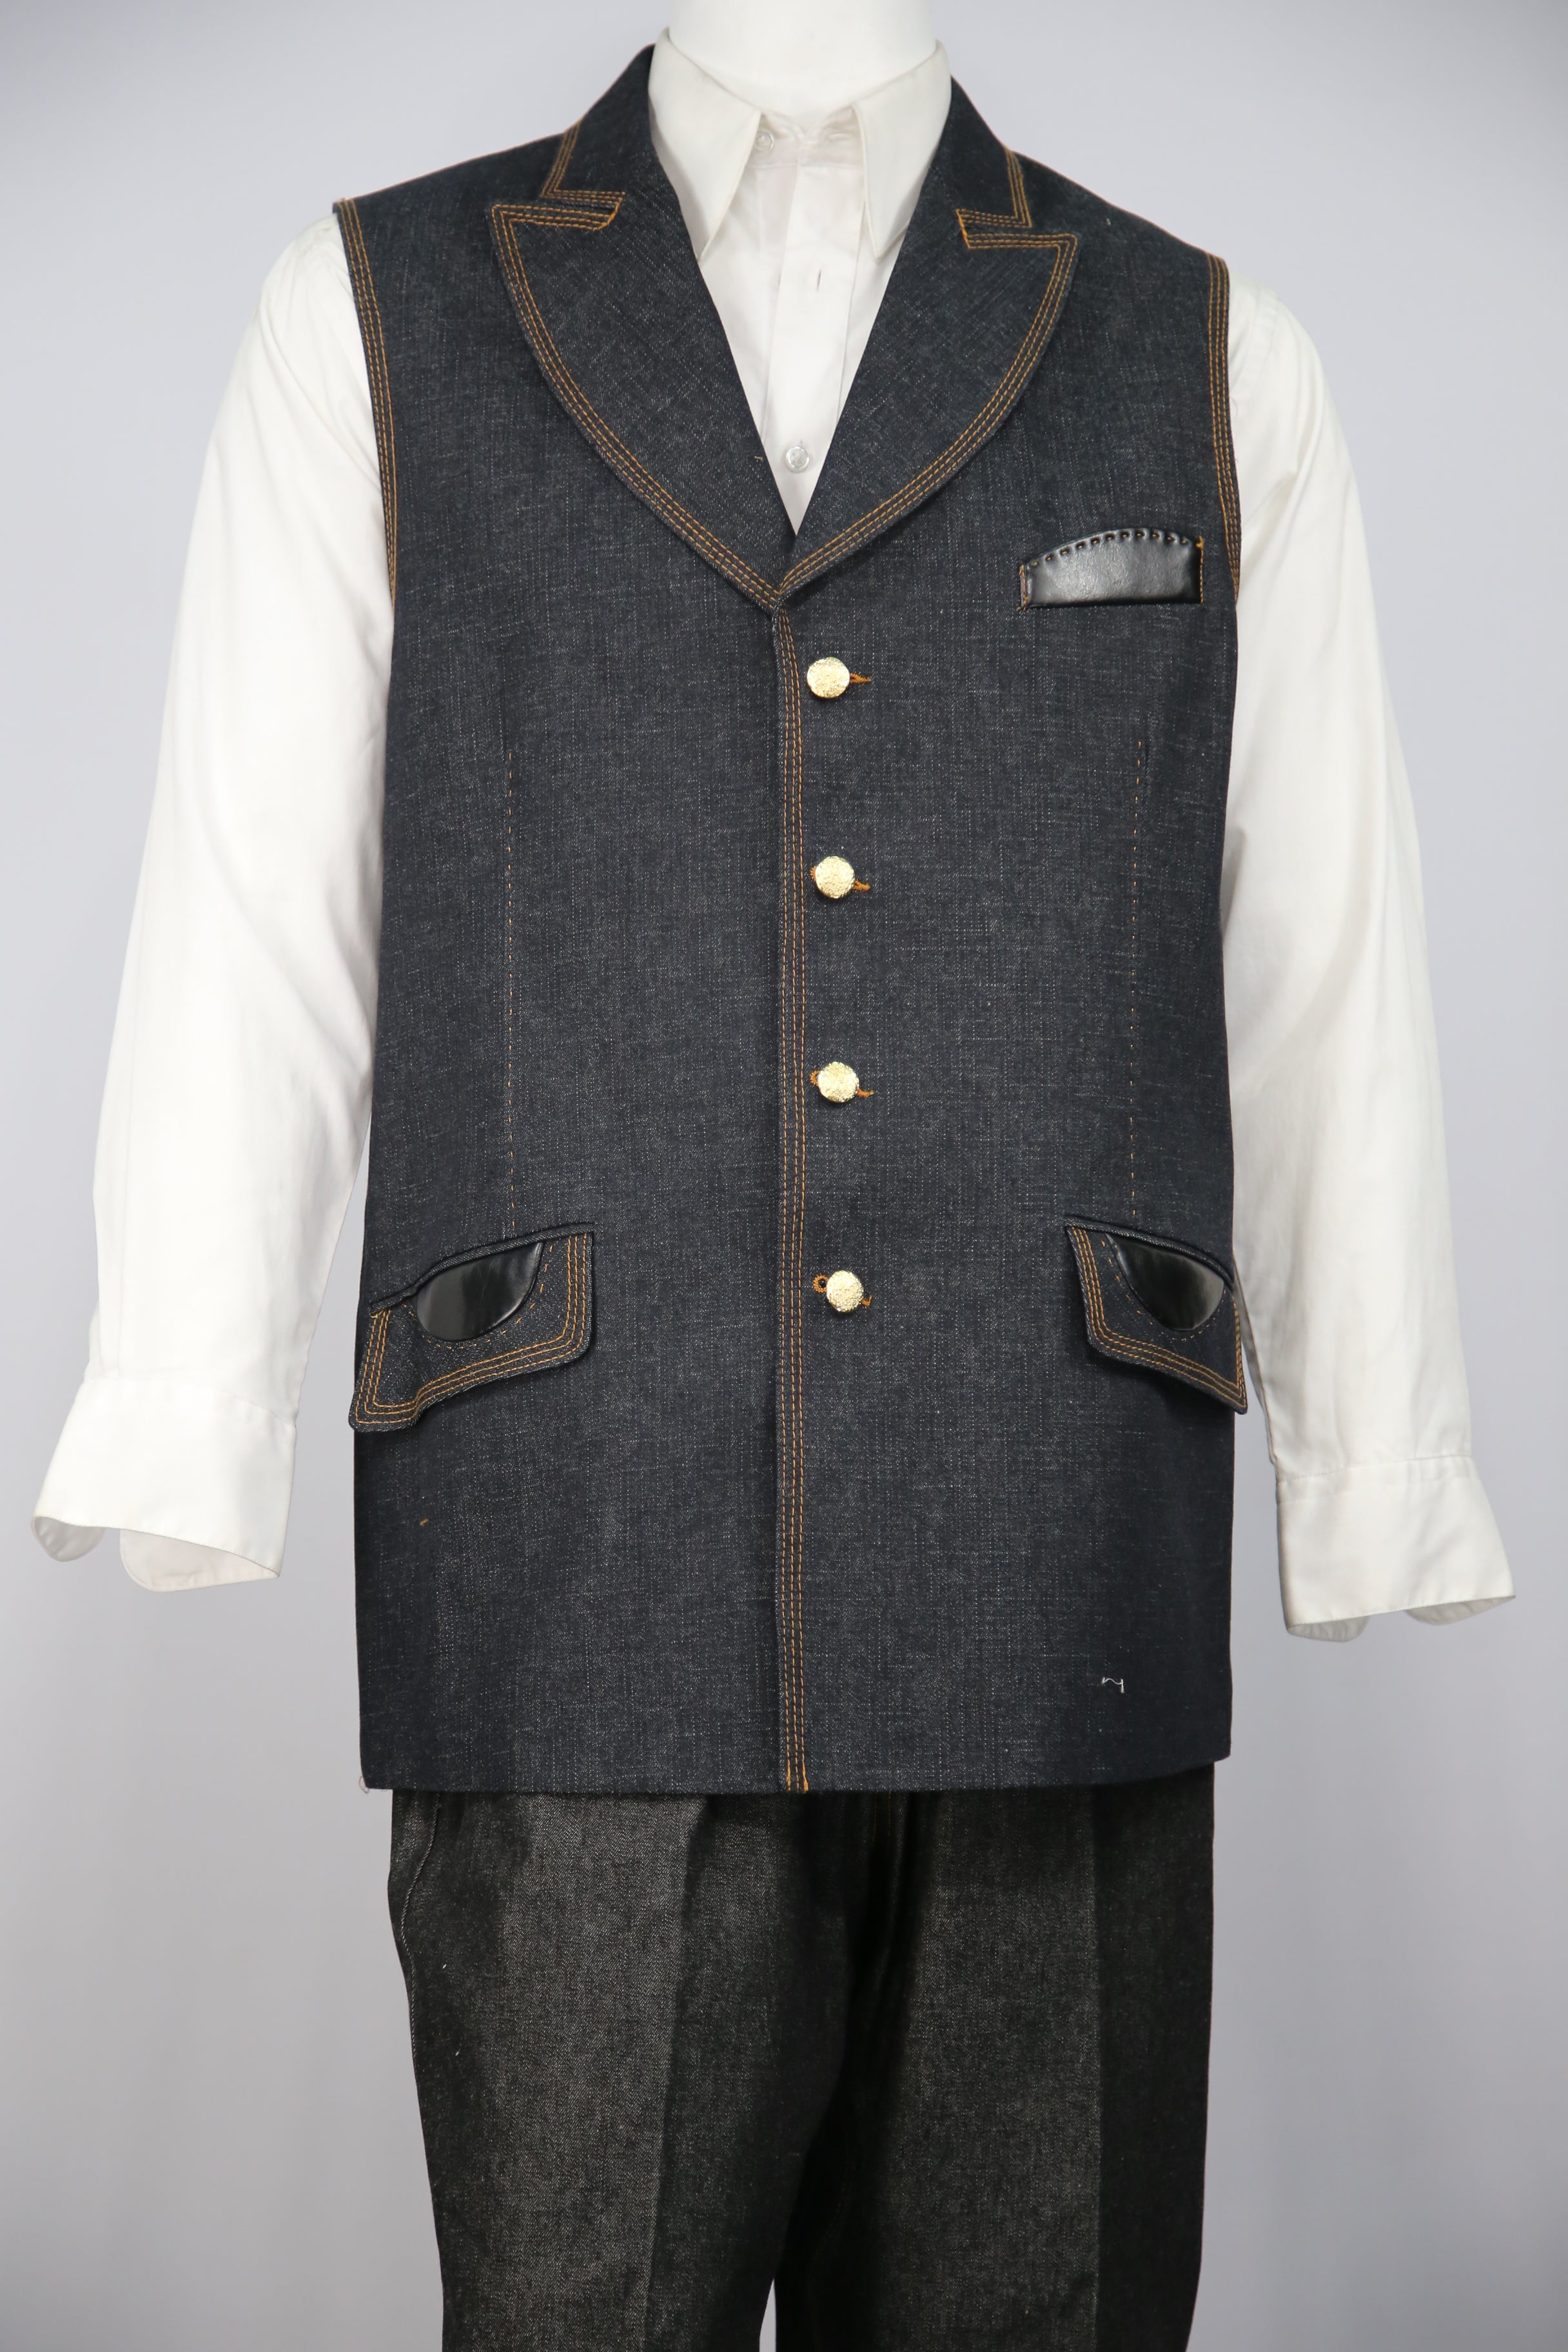 Faux Leather Accents Denim  2pc  Zoot Suit Vest Set